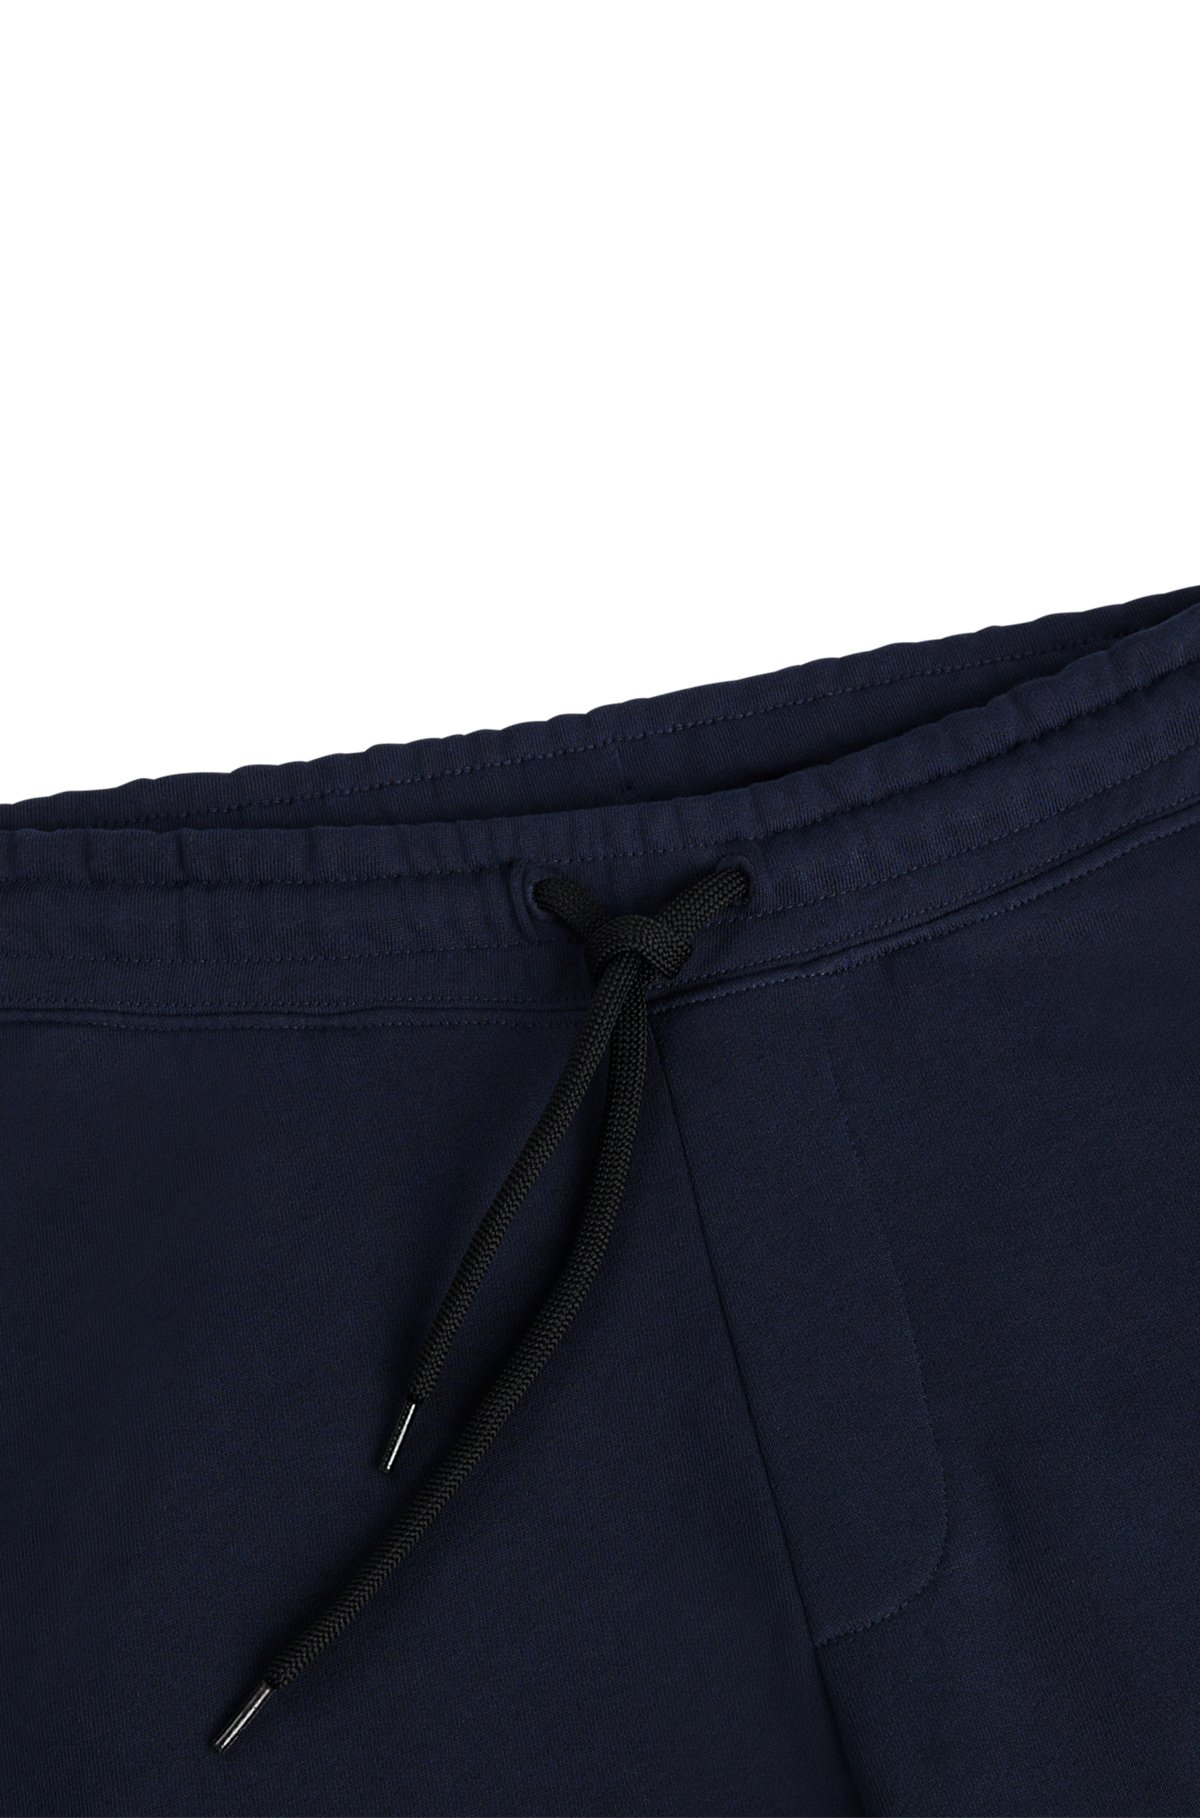 Pantaloni della tuta con coulisse in french terry e logo di grandi dimensioni, Blu scuro